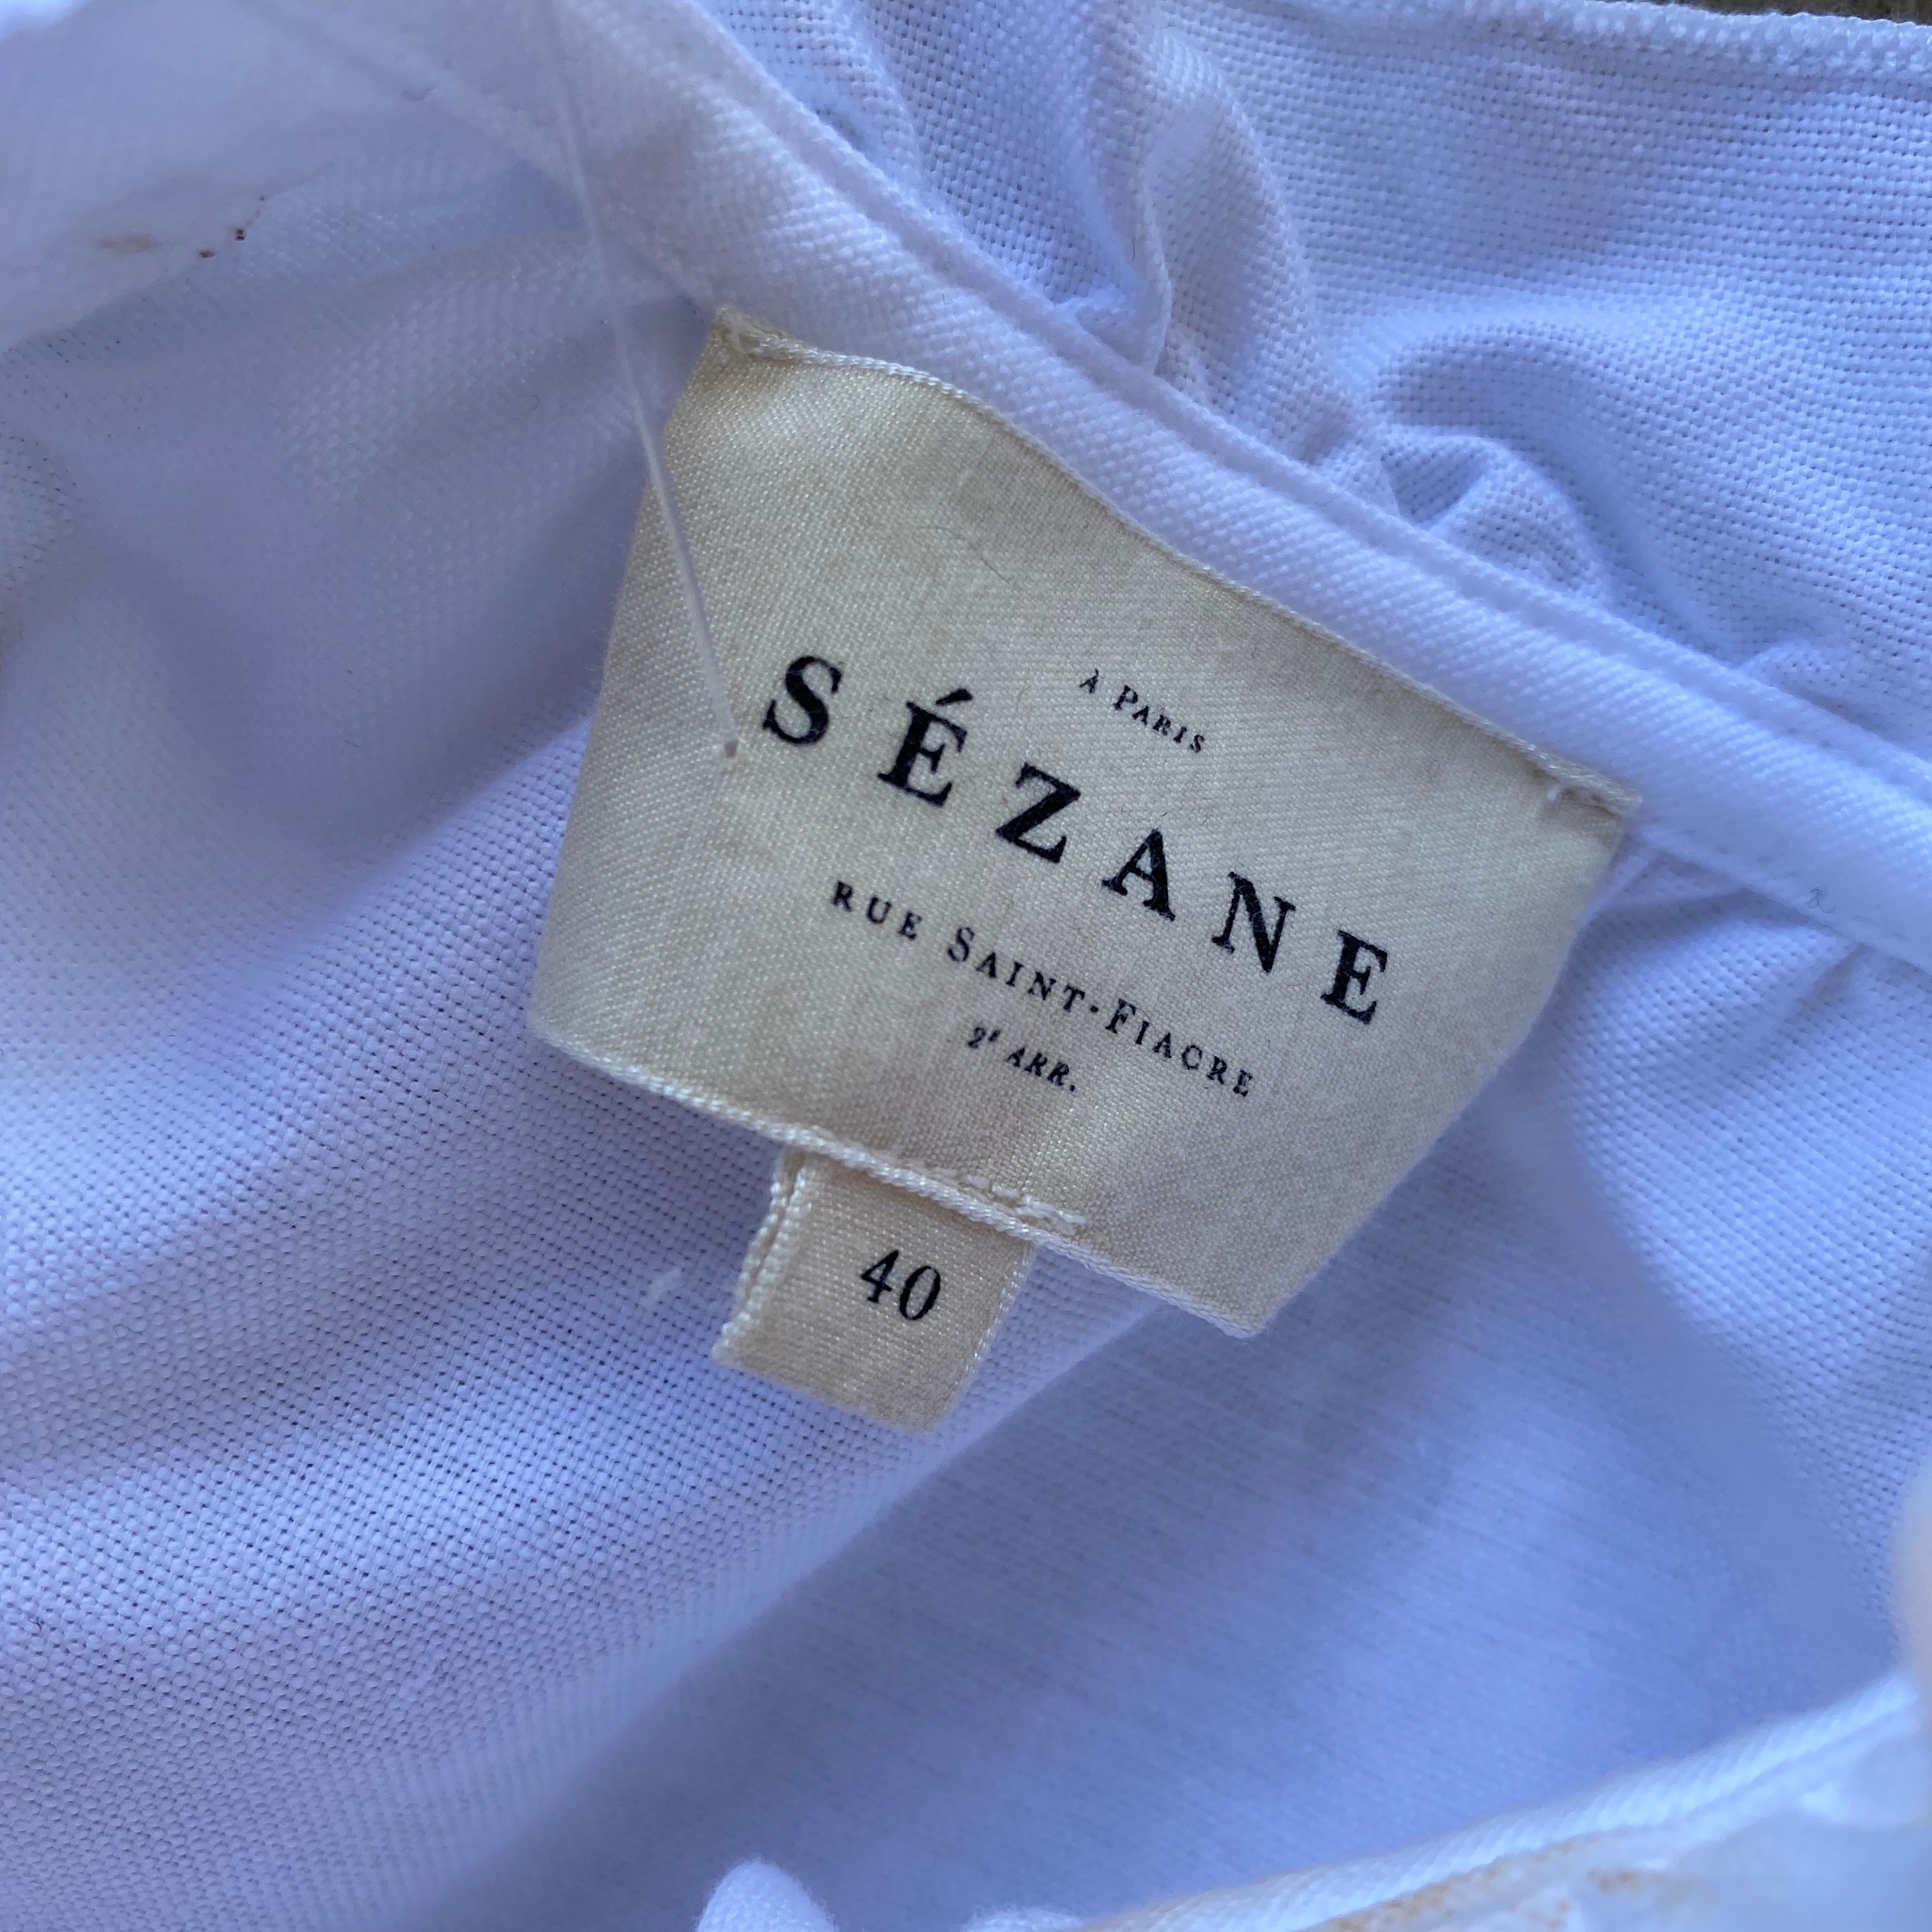 Sezane White Ruffle Collar Top, Size 40 – Voyage is a Verb